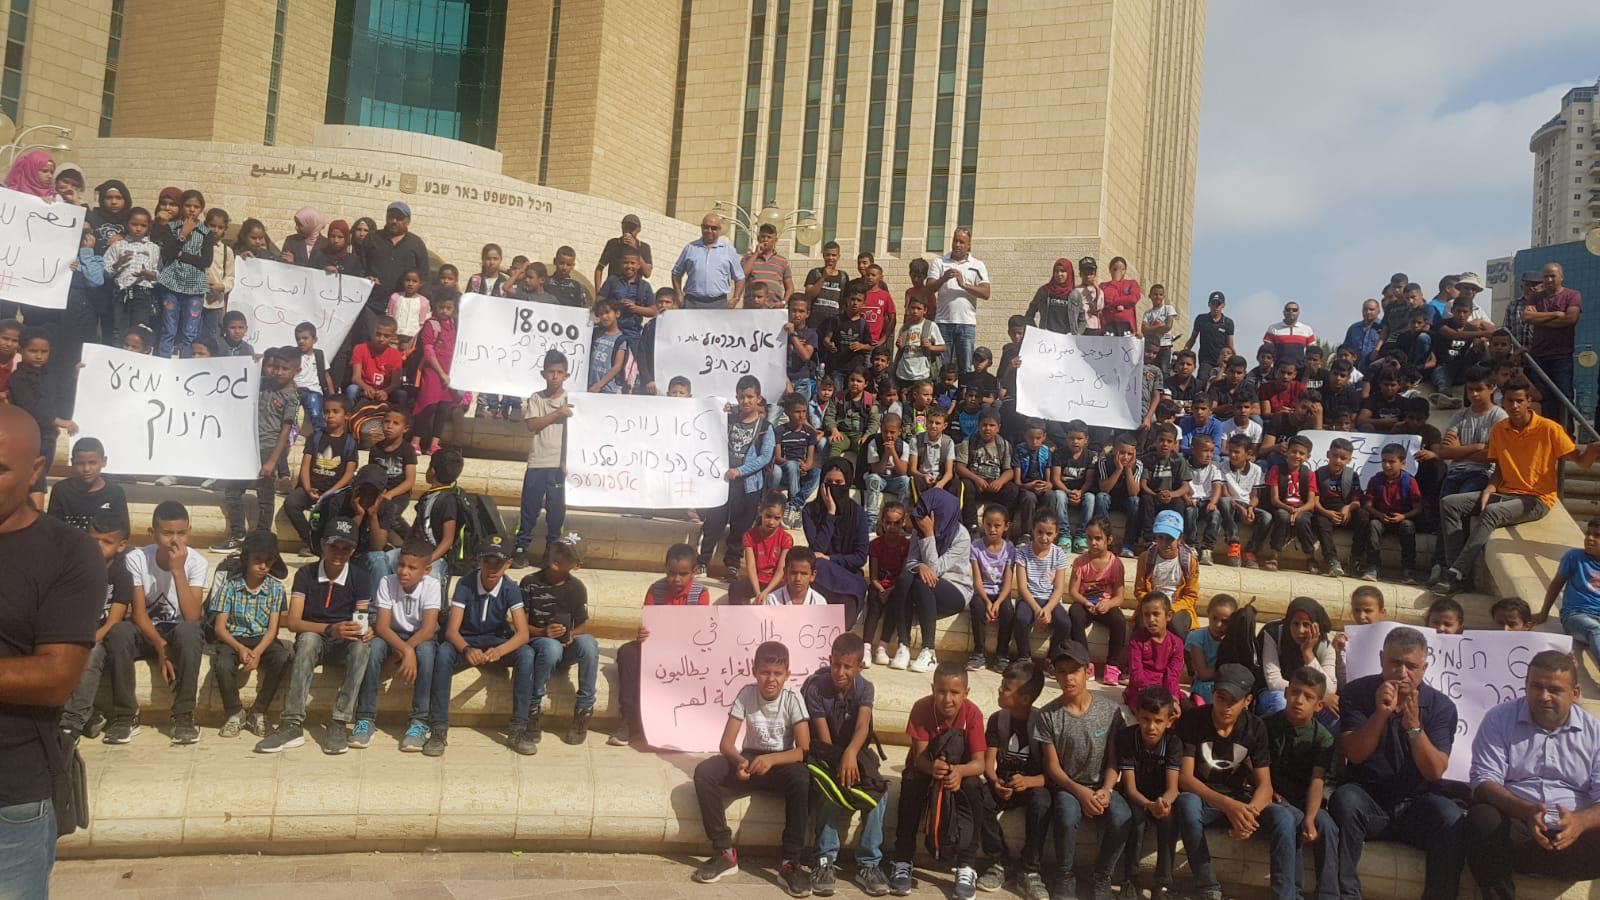 למעלה מ-1,000 מפגינים הגיעו הבוקר לרחבת קריית הממשלה בבאר שבע במחאה על אי פתיחת שנת הלימודים בעבור 17 אלף התלמידים המתגוררים בכפרים שבמועצה. 5 בספטמבר 2019. (ללא קרדיט)